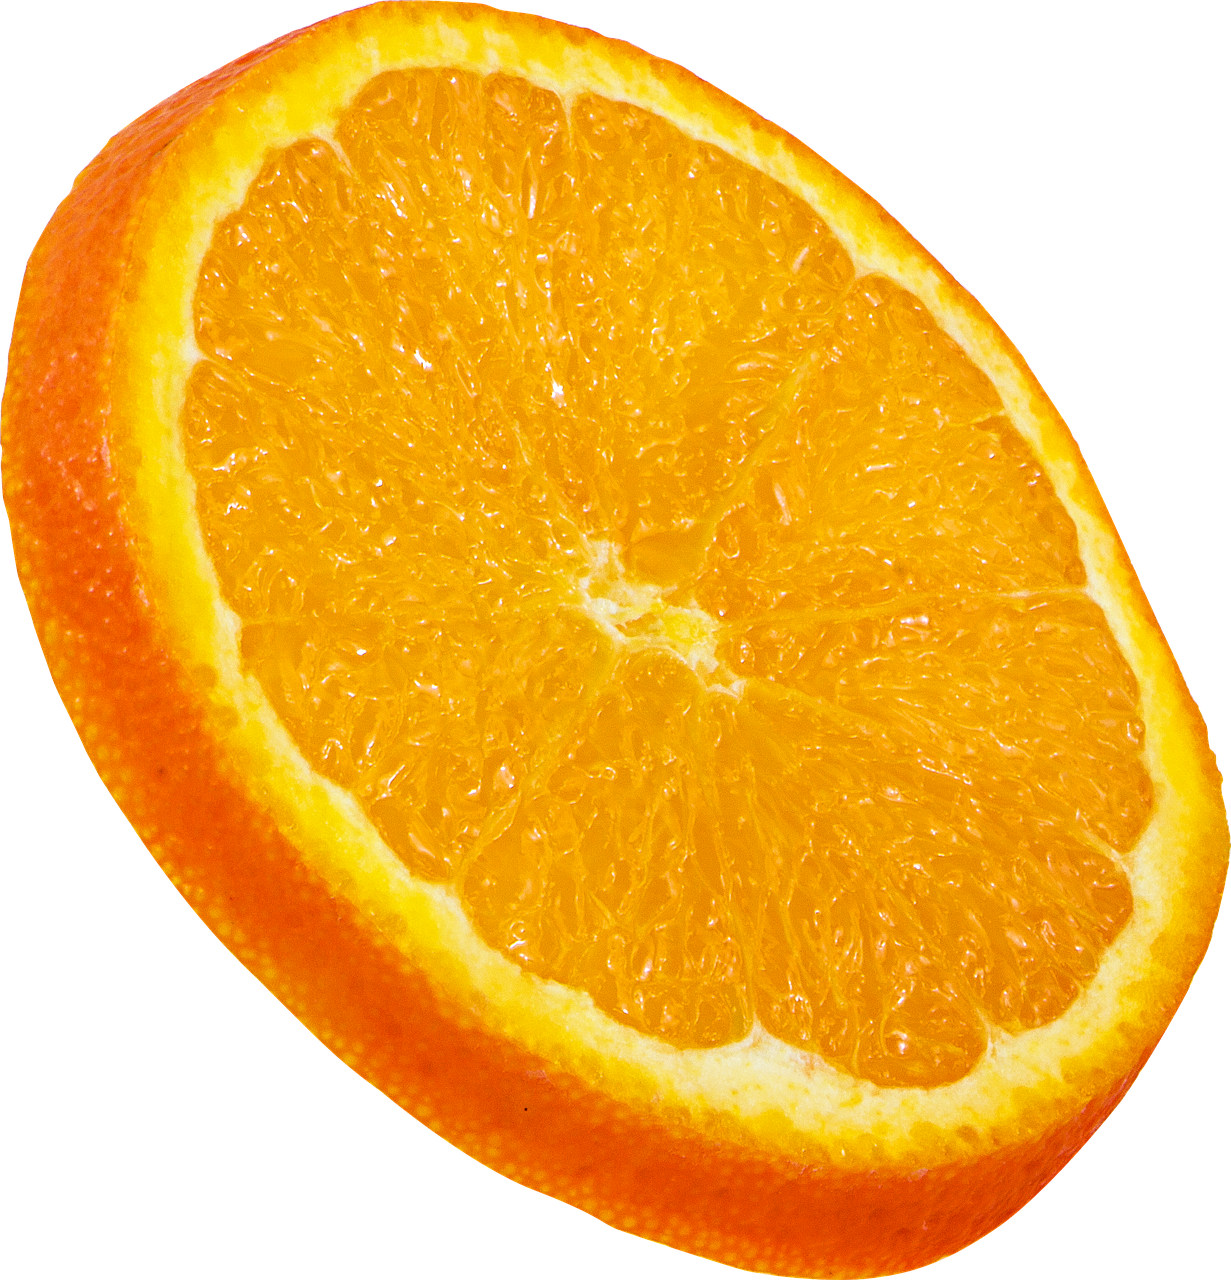 fruit orange slice free photo